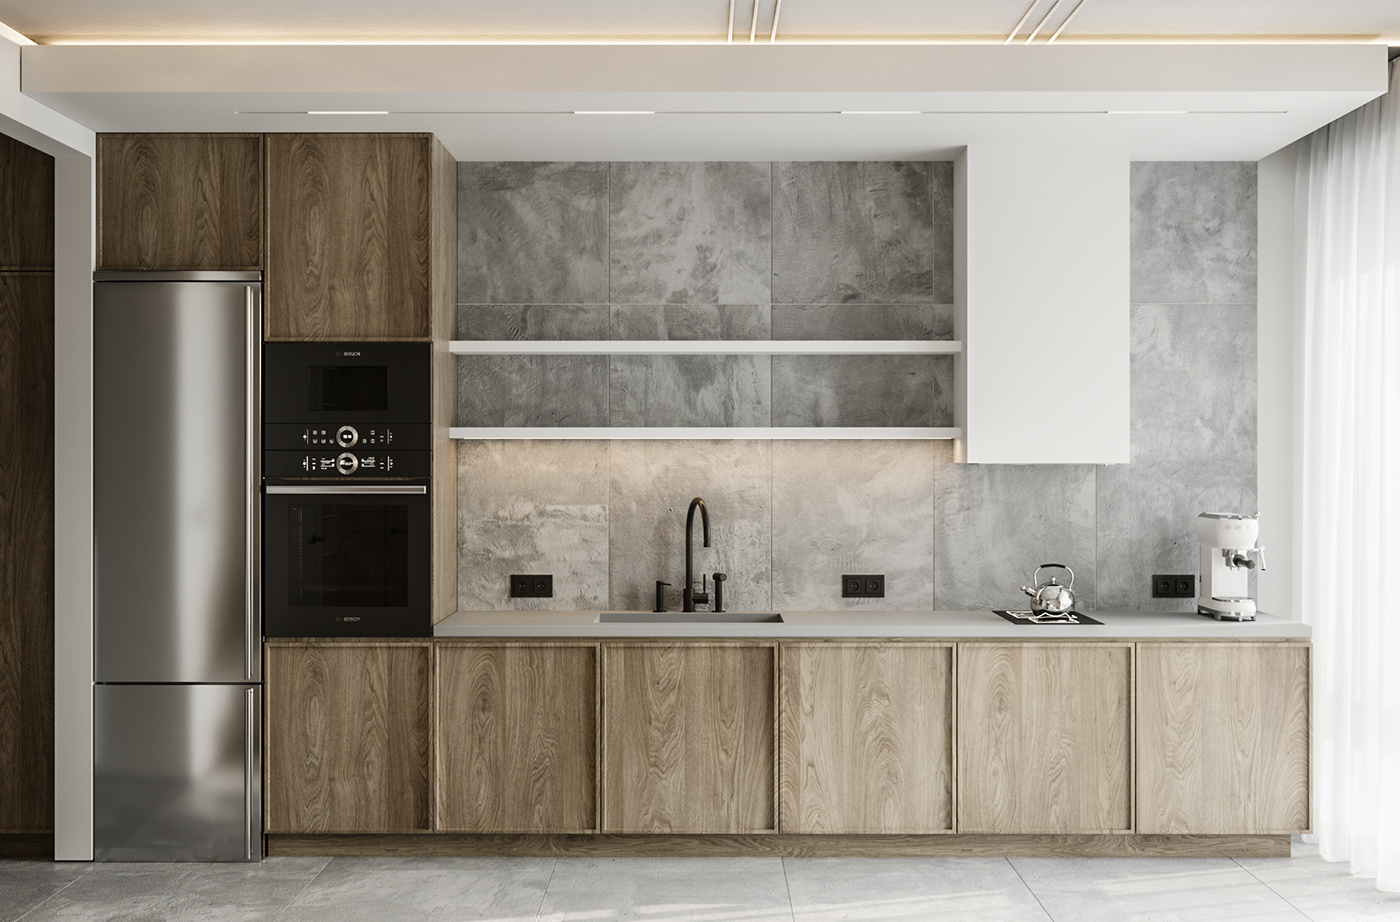 Interior 3ds max corona design visualization kitchen